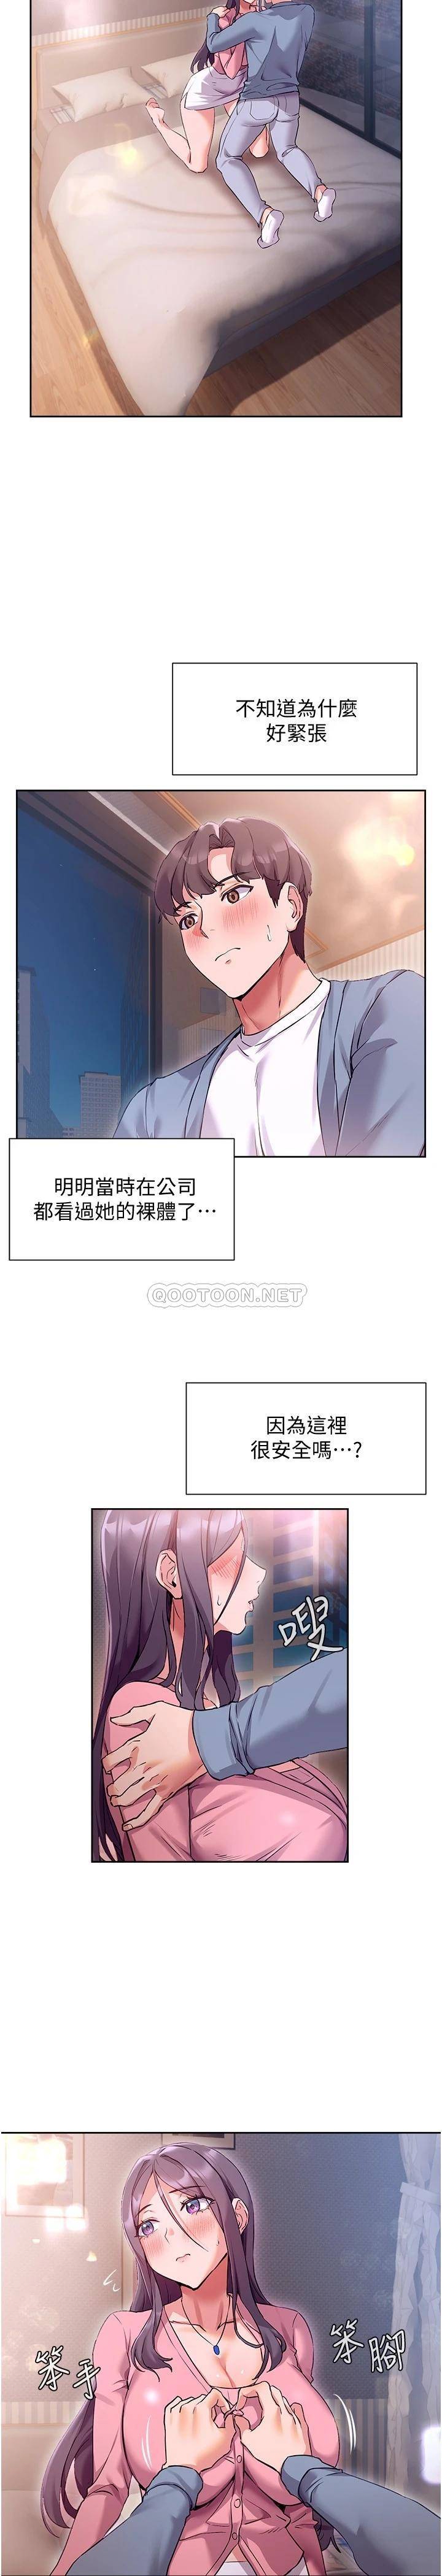 韩国污漫画 現上教學 第12话让你体验乳交的快感! 5